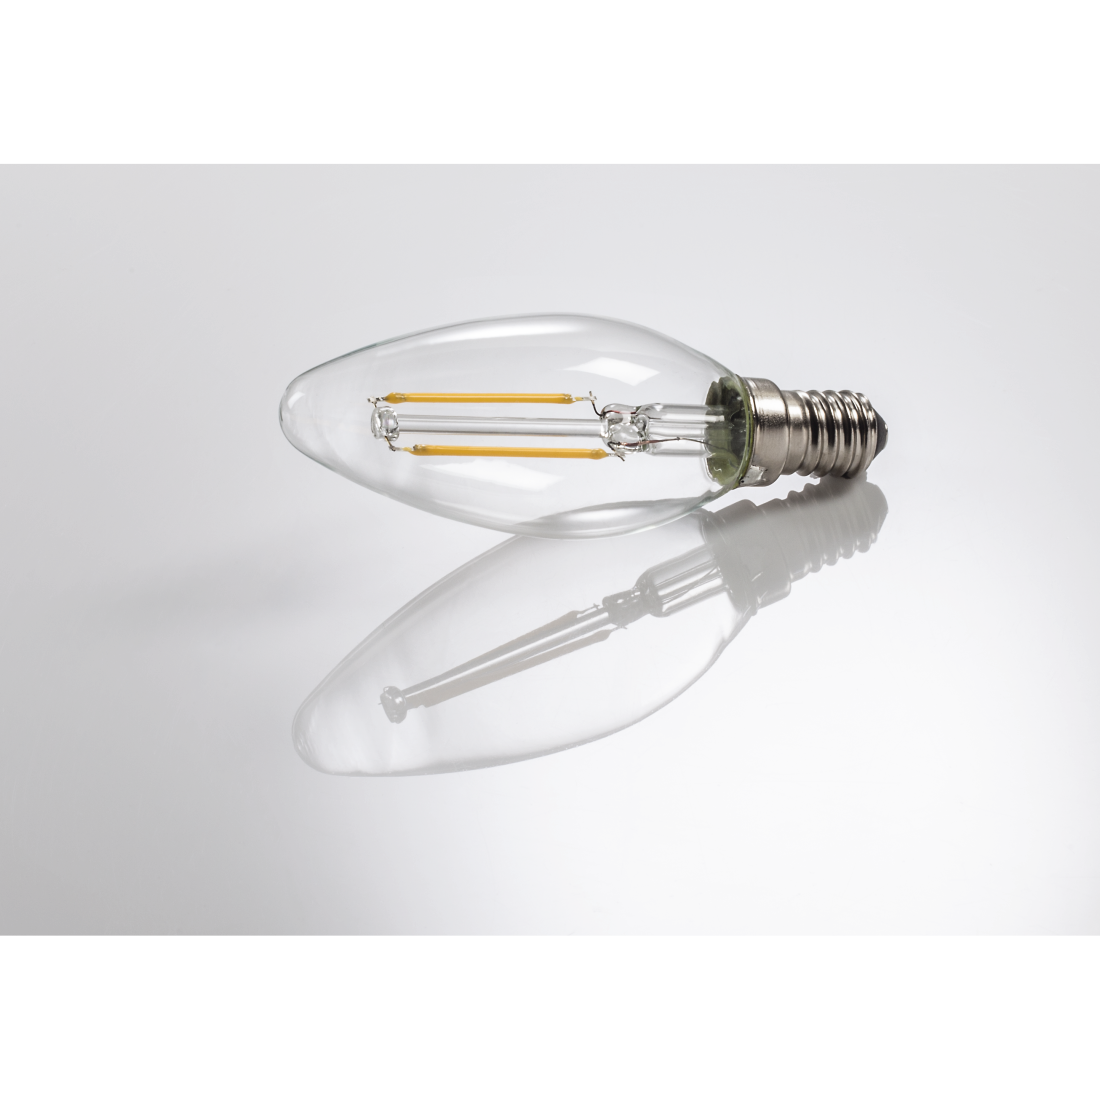 abx3 Druckfähige Abbildung 3 - Xavax, LED-Filament, E14, 250lm ersetzt 25W, Kerzenlampe, Warmweiß, Klar